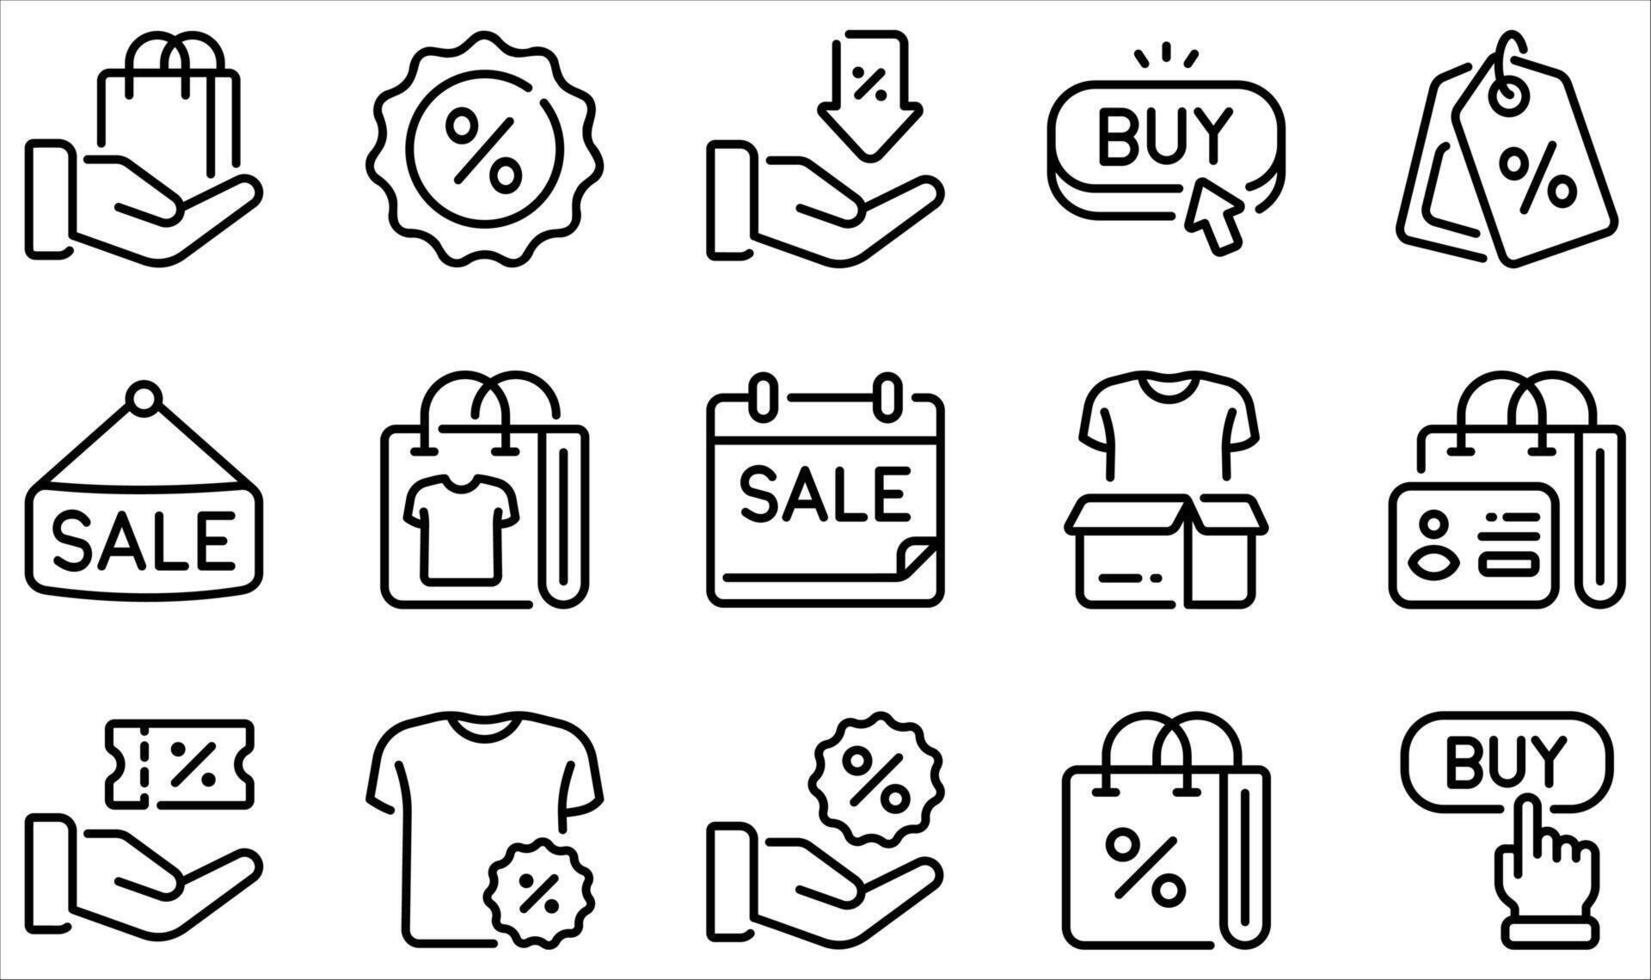 reeks van pictogrammen verwant naar verkoop en korting. bevat zo pictogrammen net zo boodschappen doen tas, korting, label prijs, verkoop, kopen, laag prijs en meer. vector